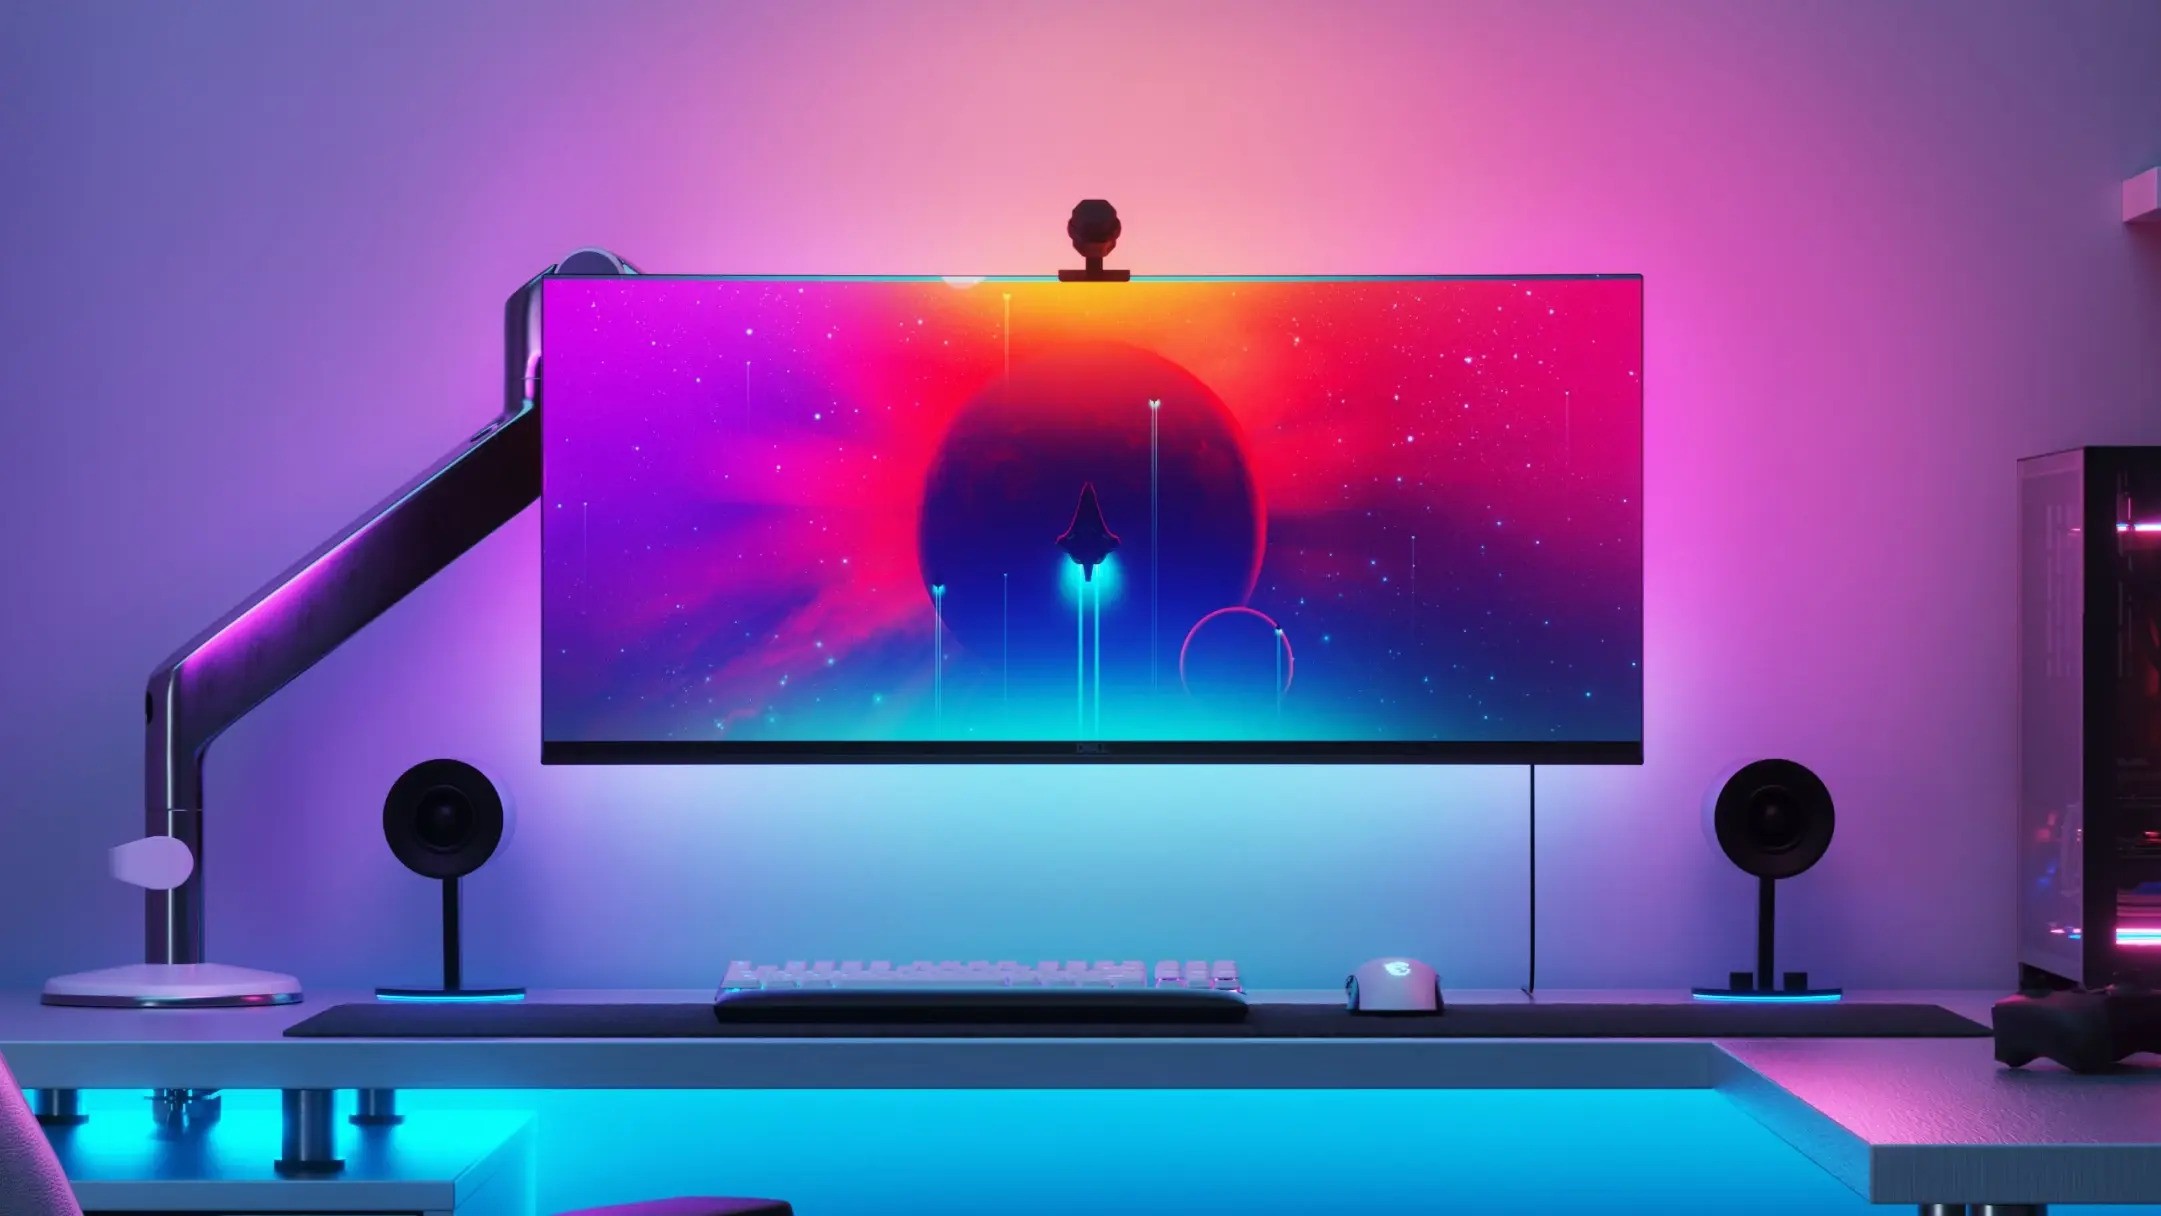 Immagine di un monitor con una luce colorata e brillante proveniente da dietro di esso